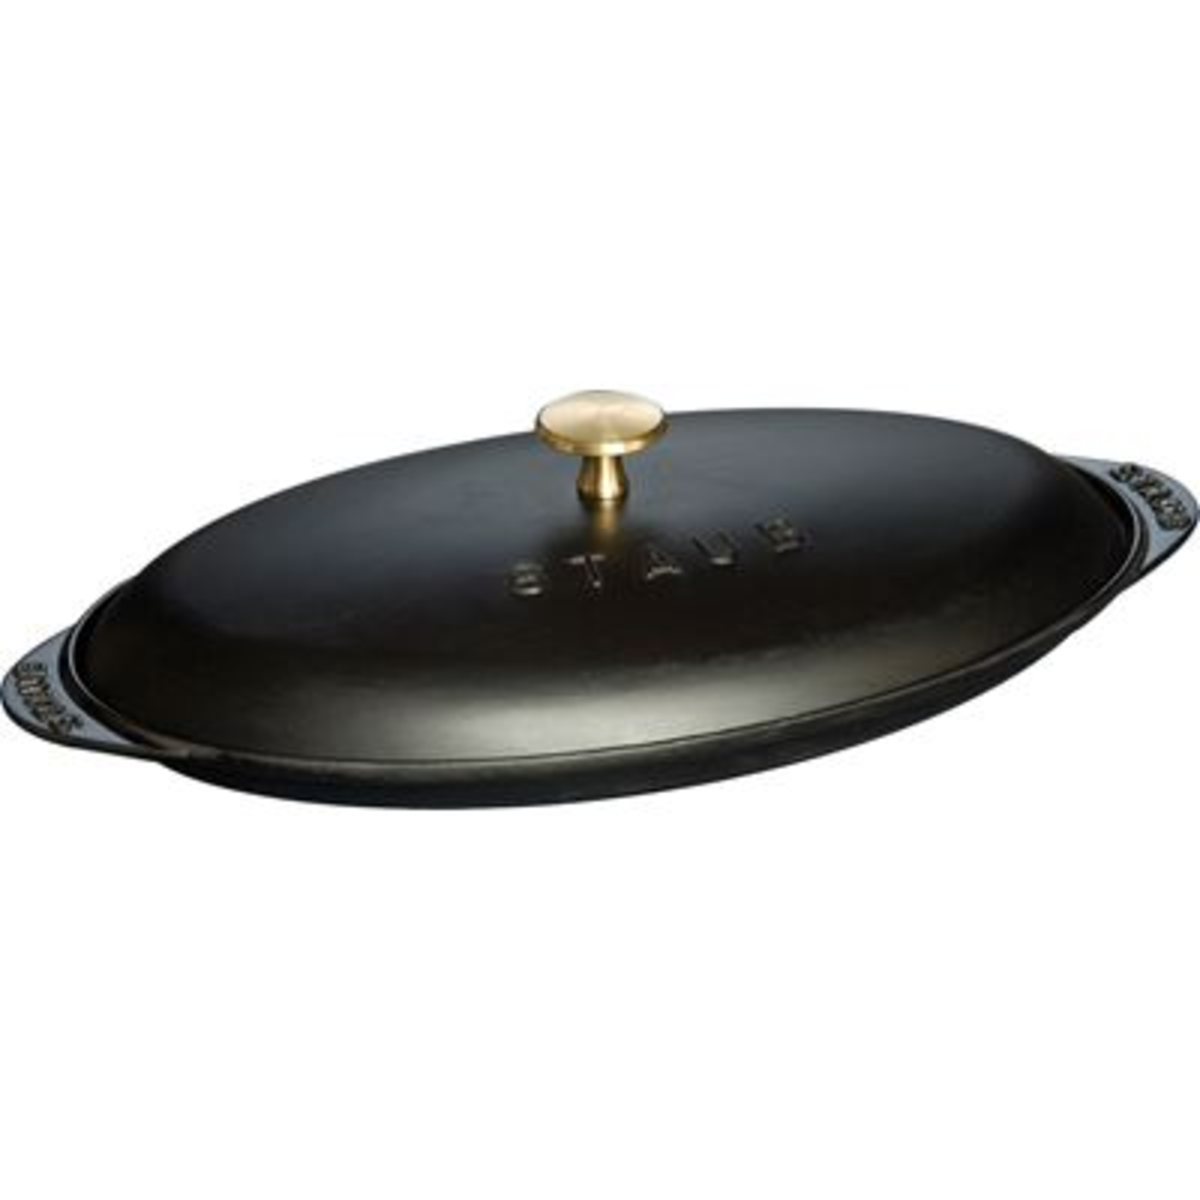 Assiette chaude de présentation en fonte noir mat 31 cm Staub - 40509-400-0